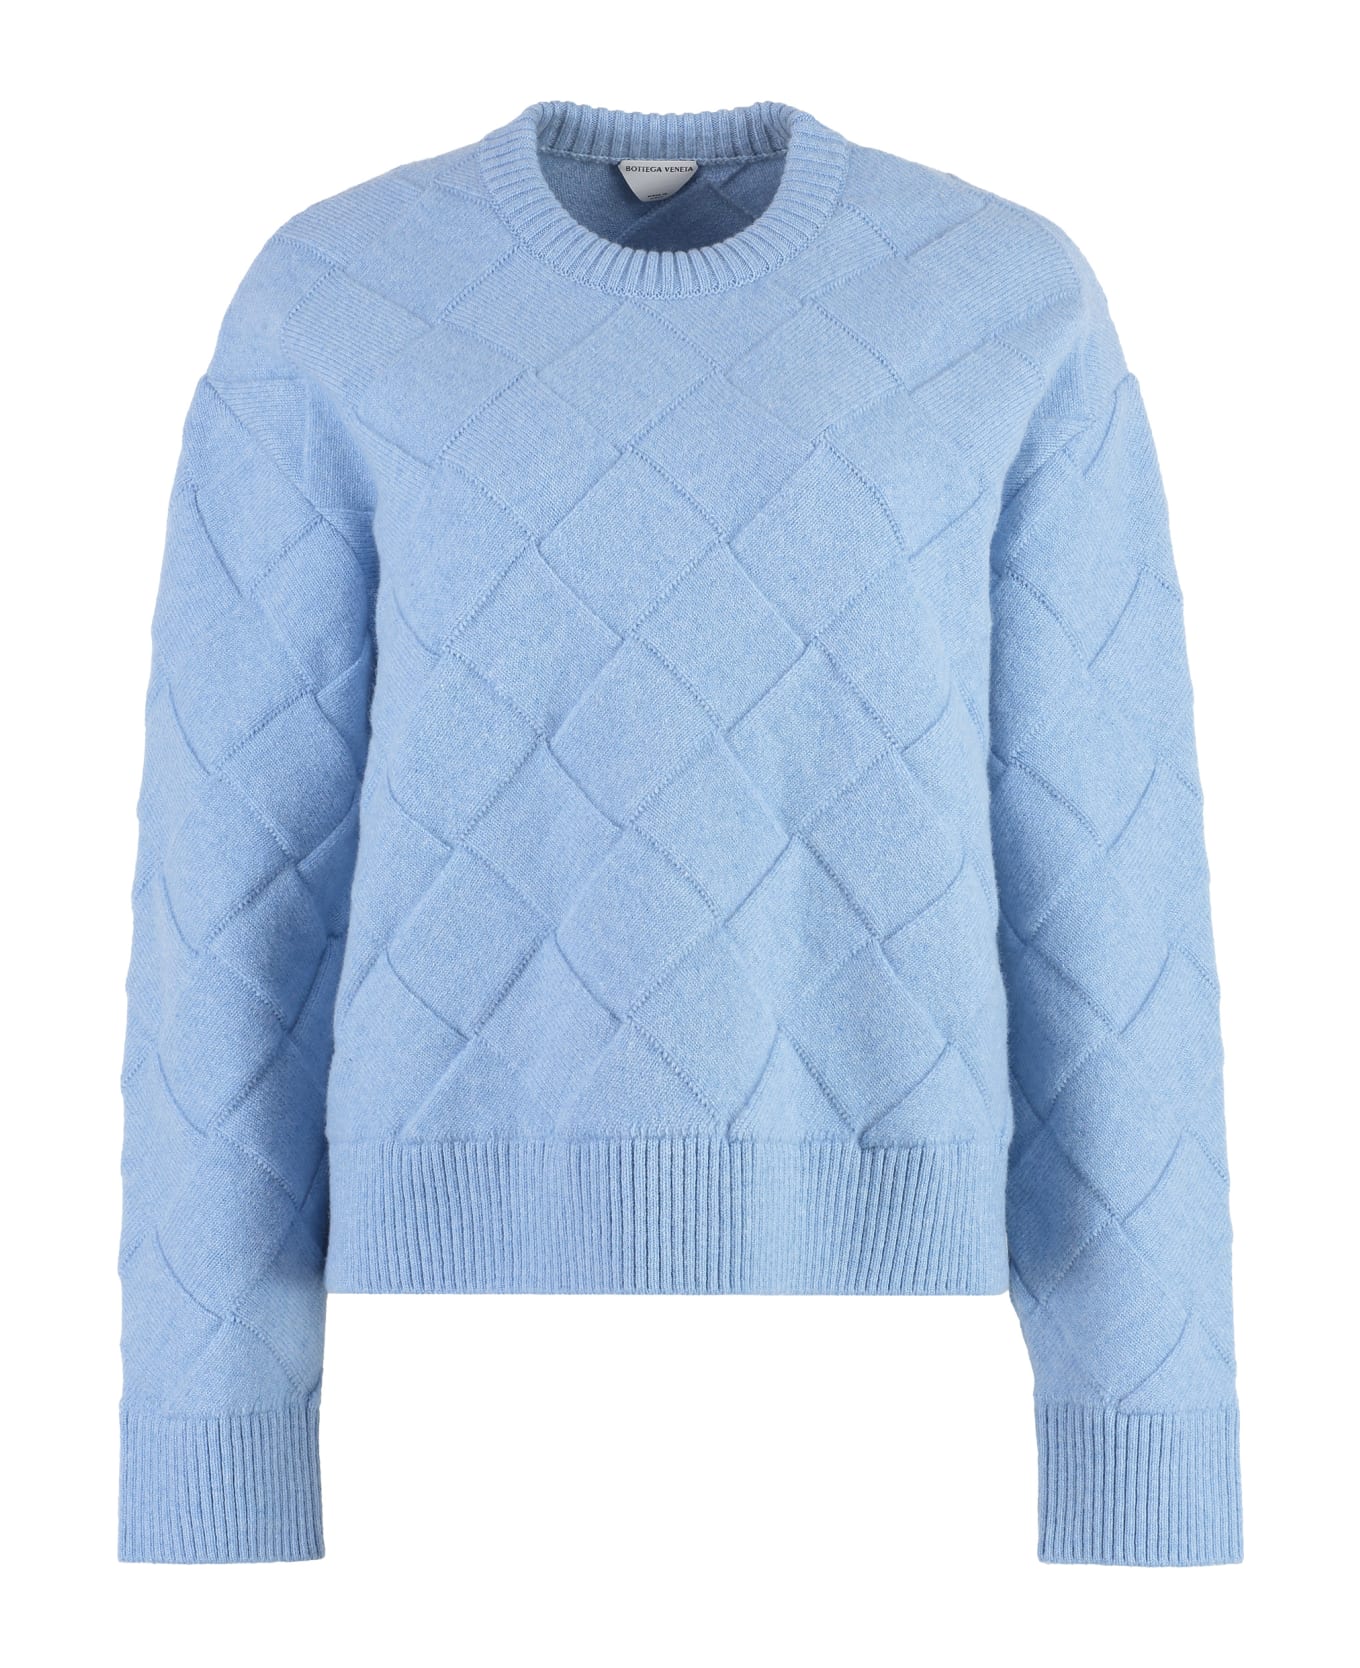 Bottega Veneta Crew-neck Wool Sweater - Blue